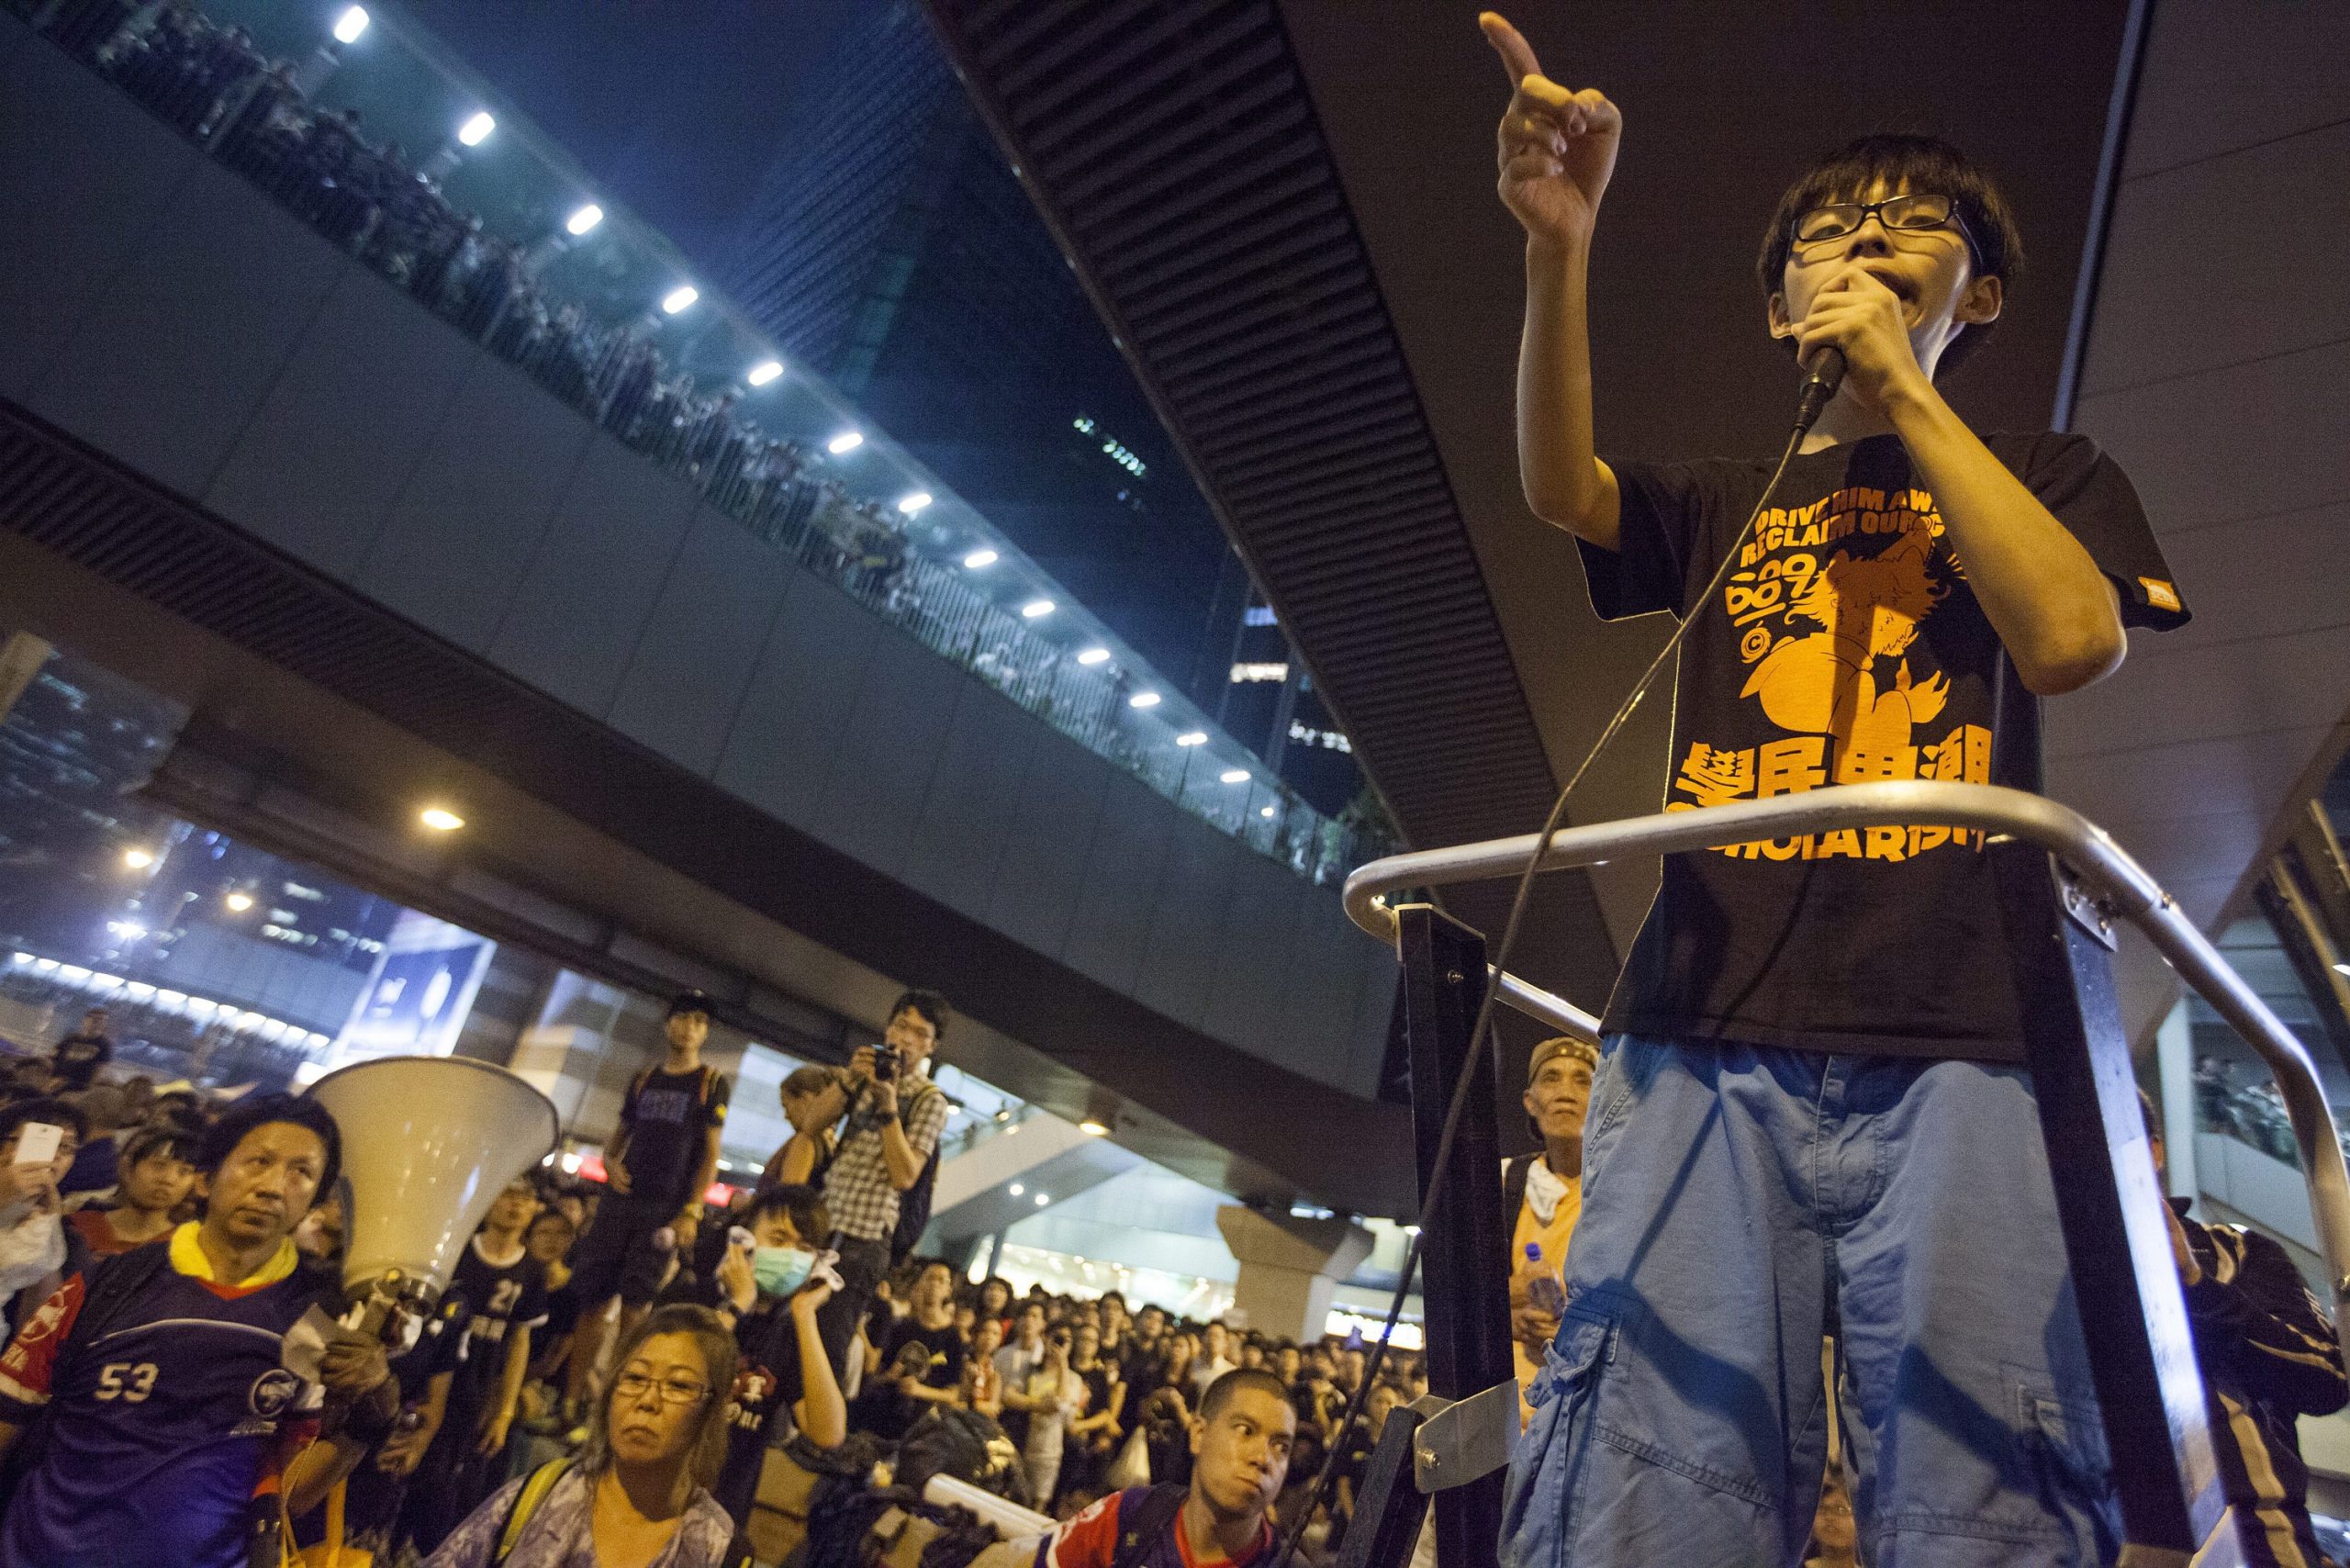 Quem é Joshua Wong, o miúdo de 17 anos que está a inquietar a China?